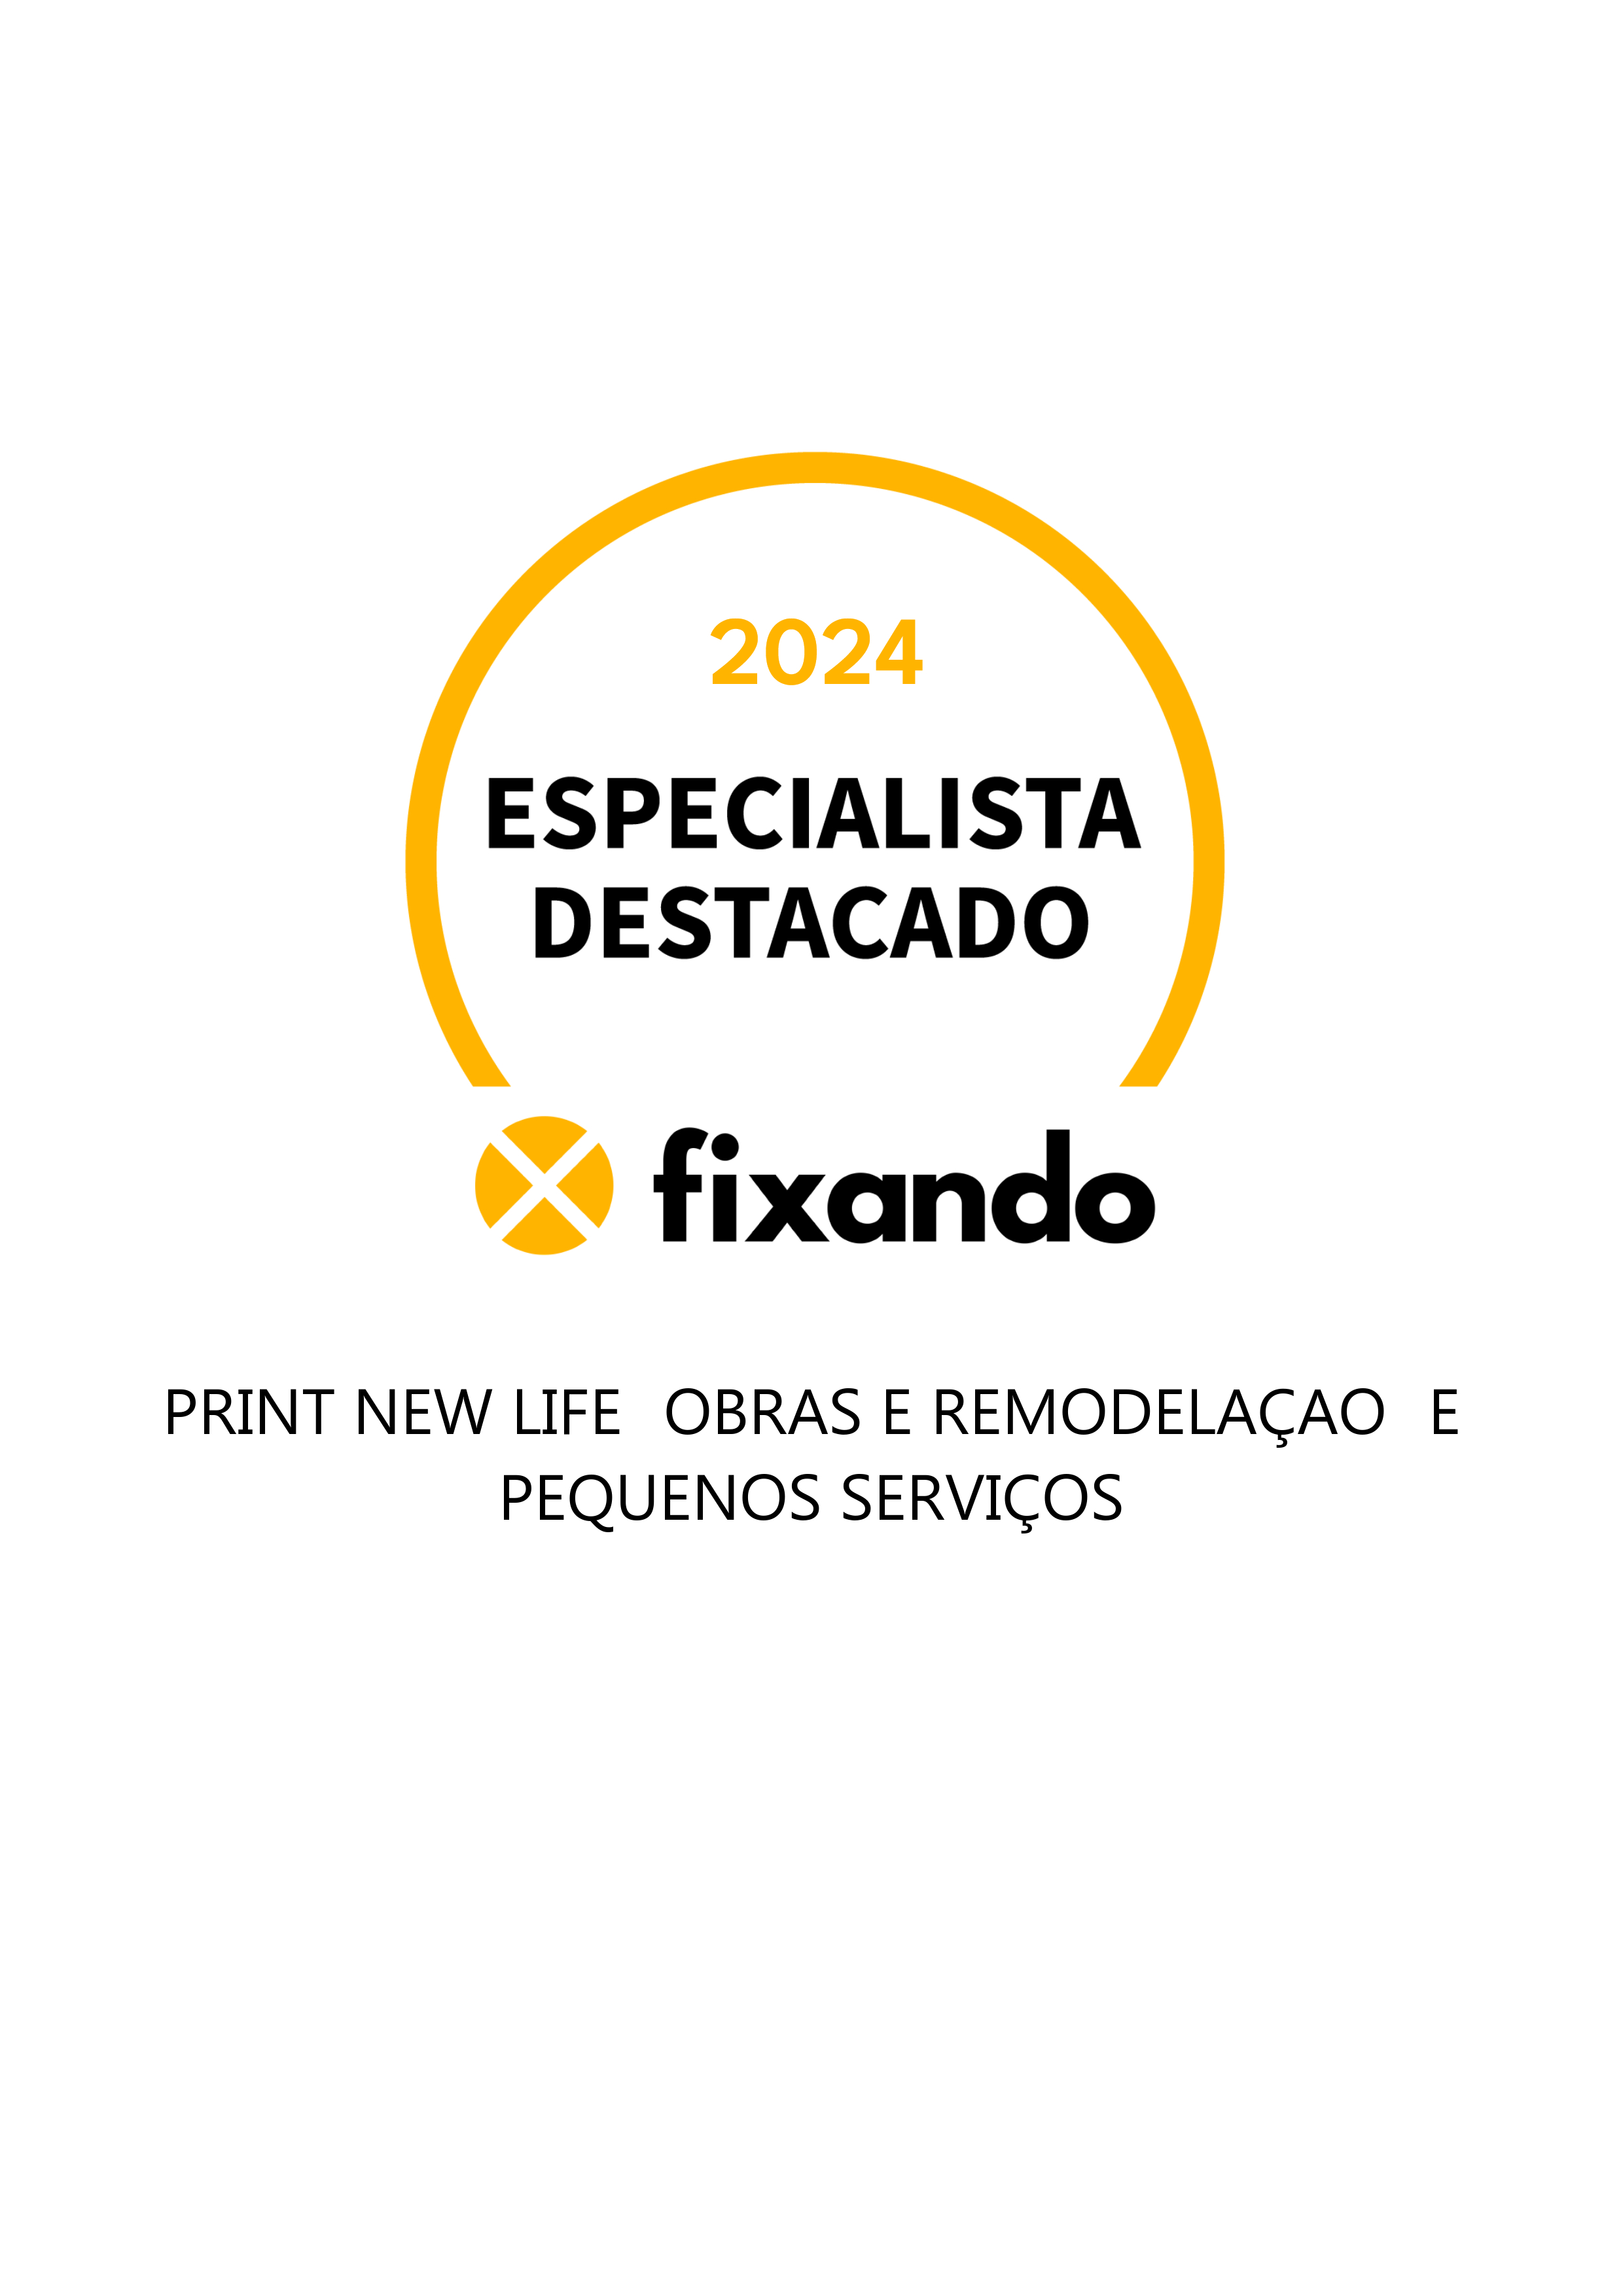 Print New Life (Obras e remodelaçao) e pequenos serviços - Lisboa - Limpeza da Casa (Recorrente)